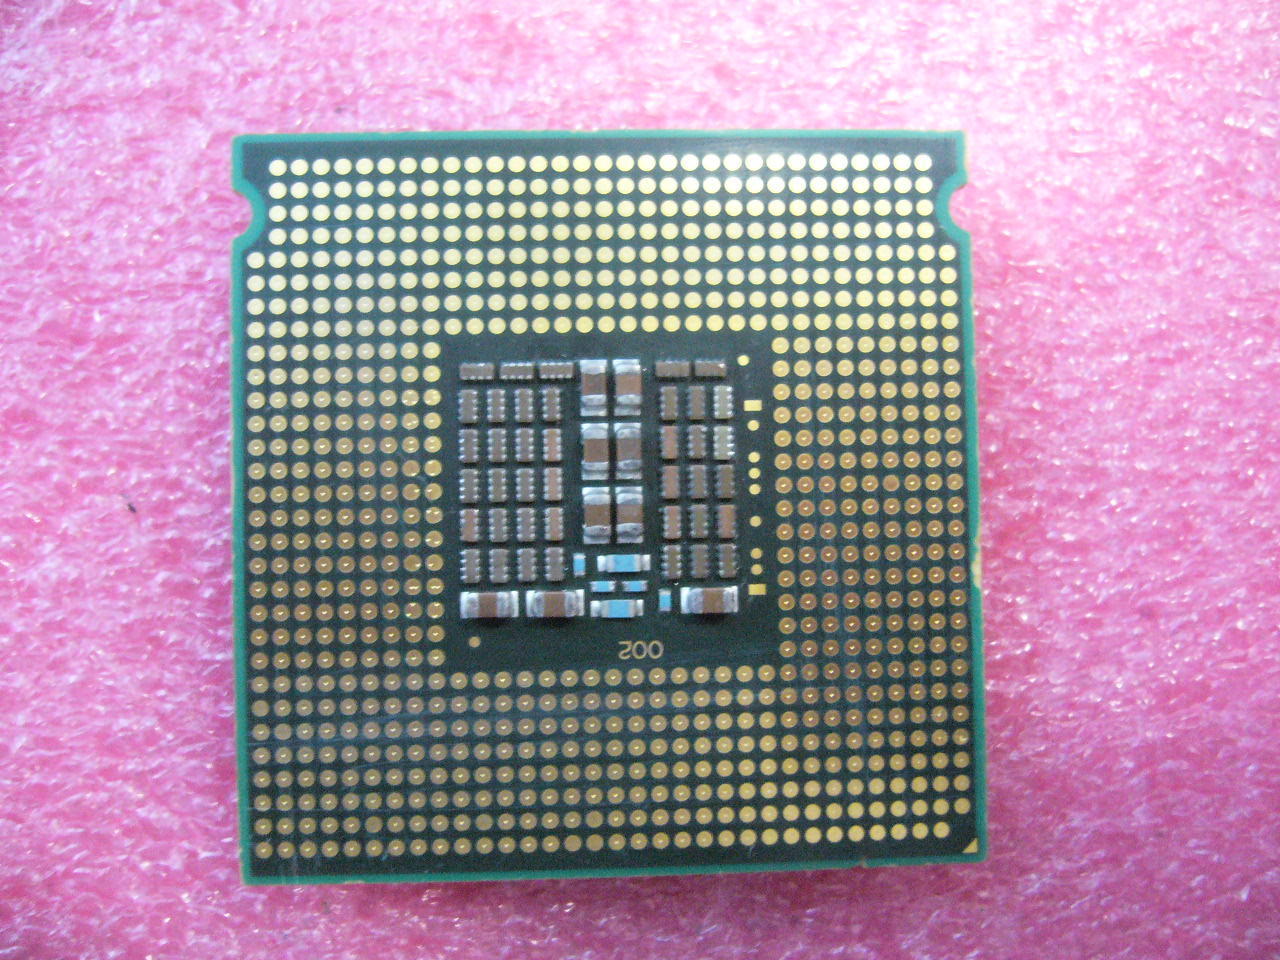 QTY 1x Intel Xeon CPU Quad Core X5450 3.00Ghz/12MB/1333Mhz LGA771 SLBBE - Click Image to Close